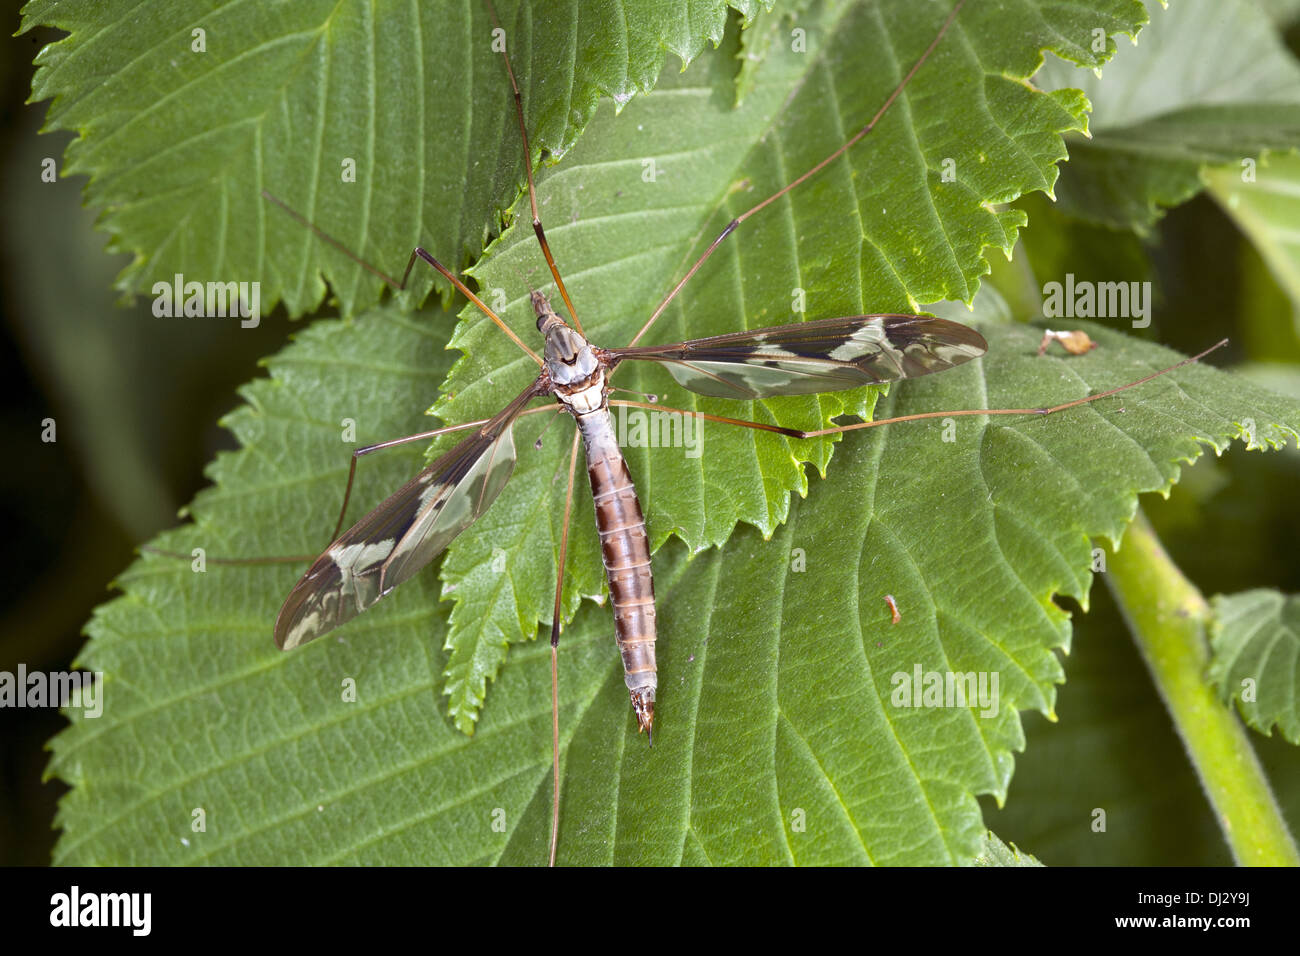 Tipula maxima, Crane fly Stock Photo